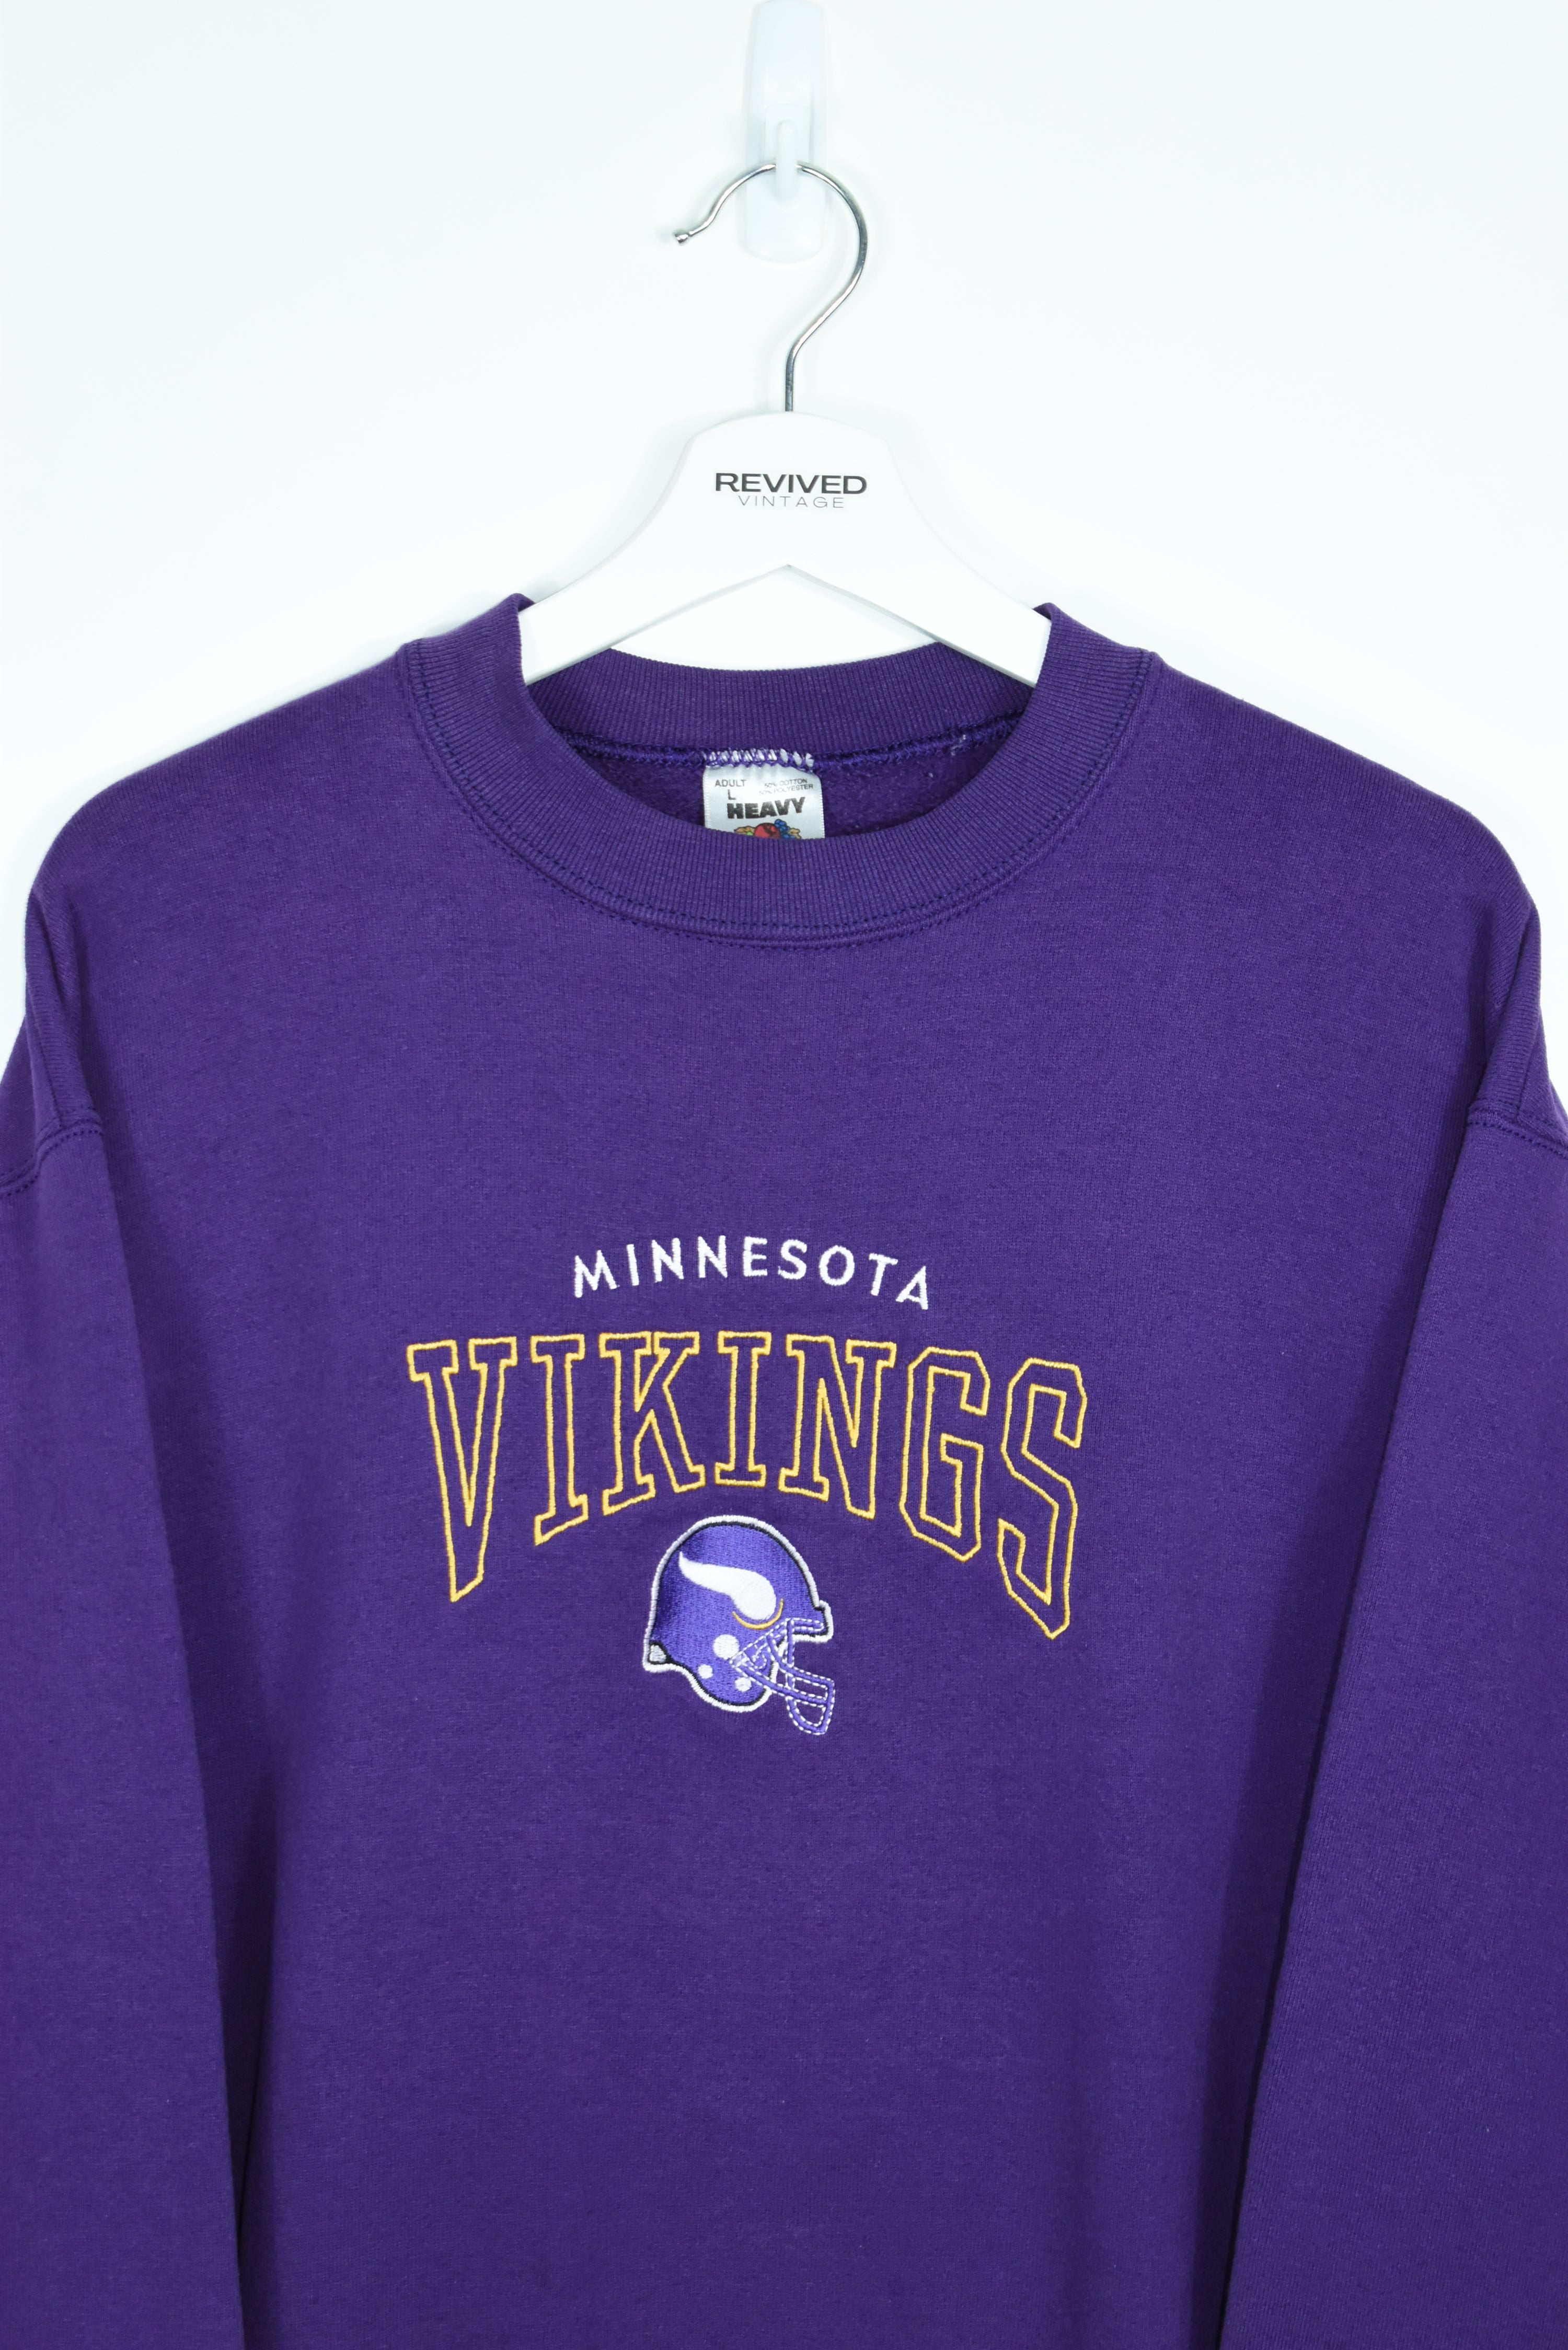 Vintage Minnesota Vikings Embroidery Sweatshirt Medium/ Large